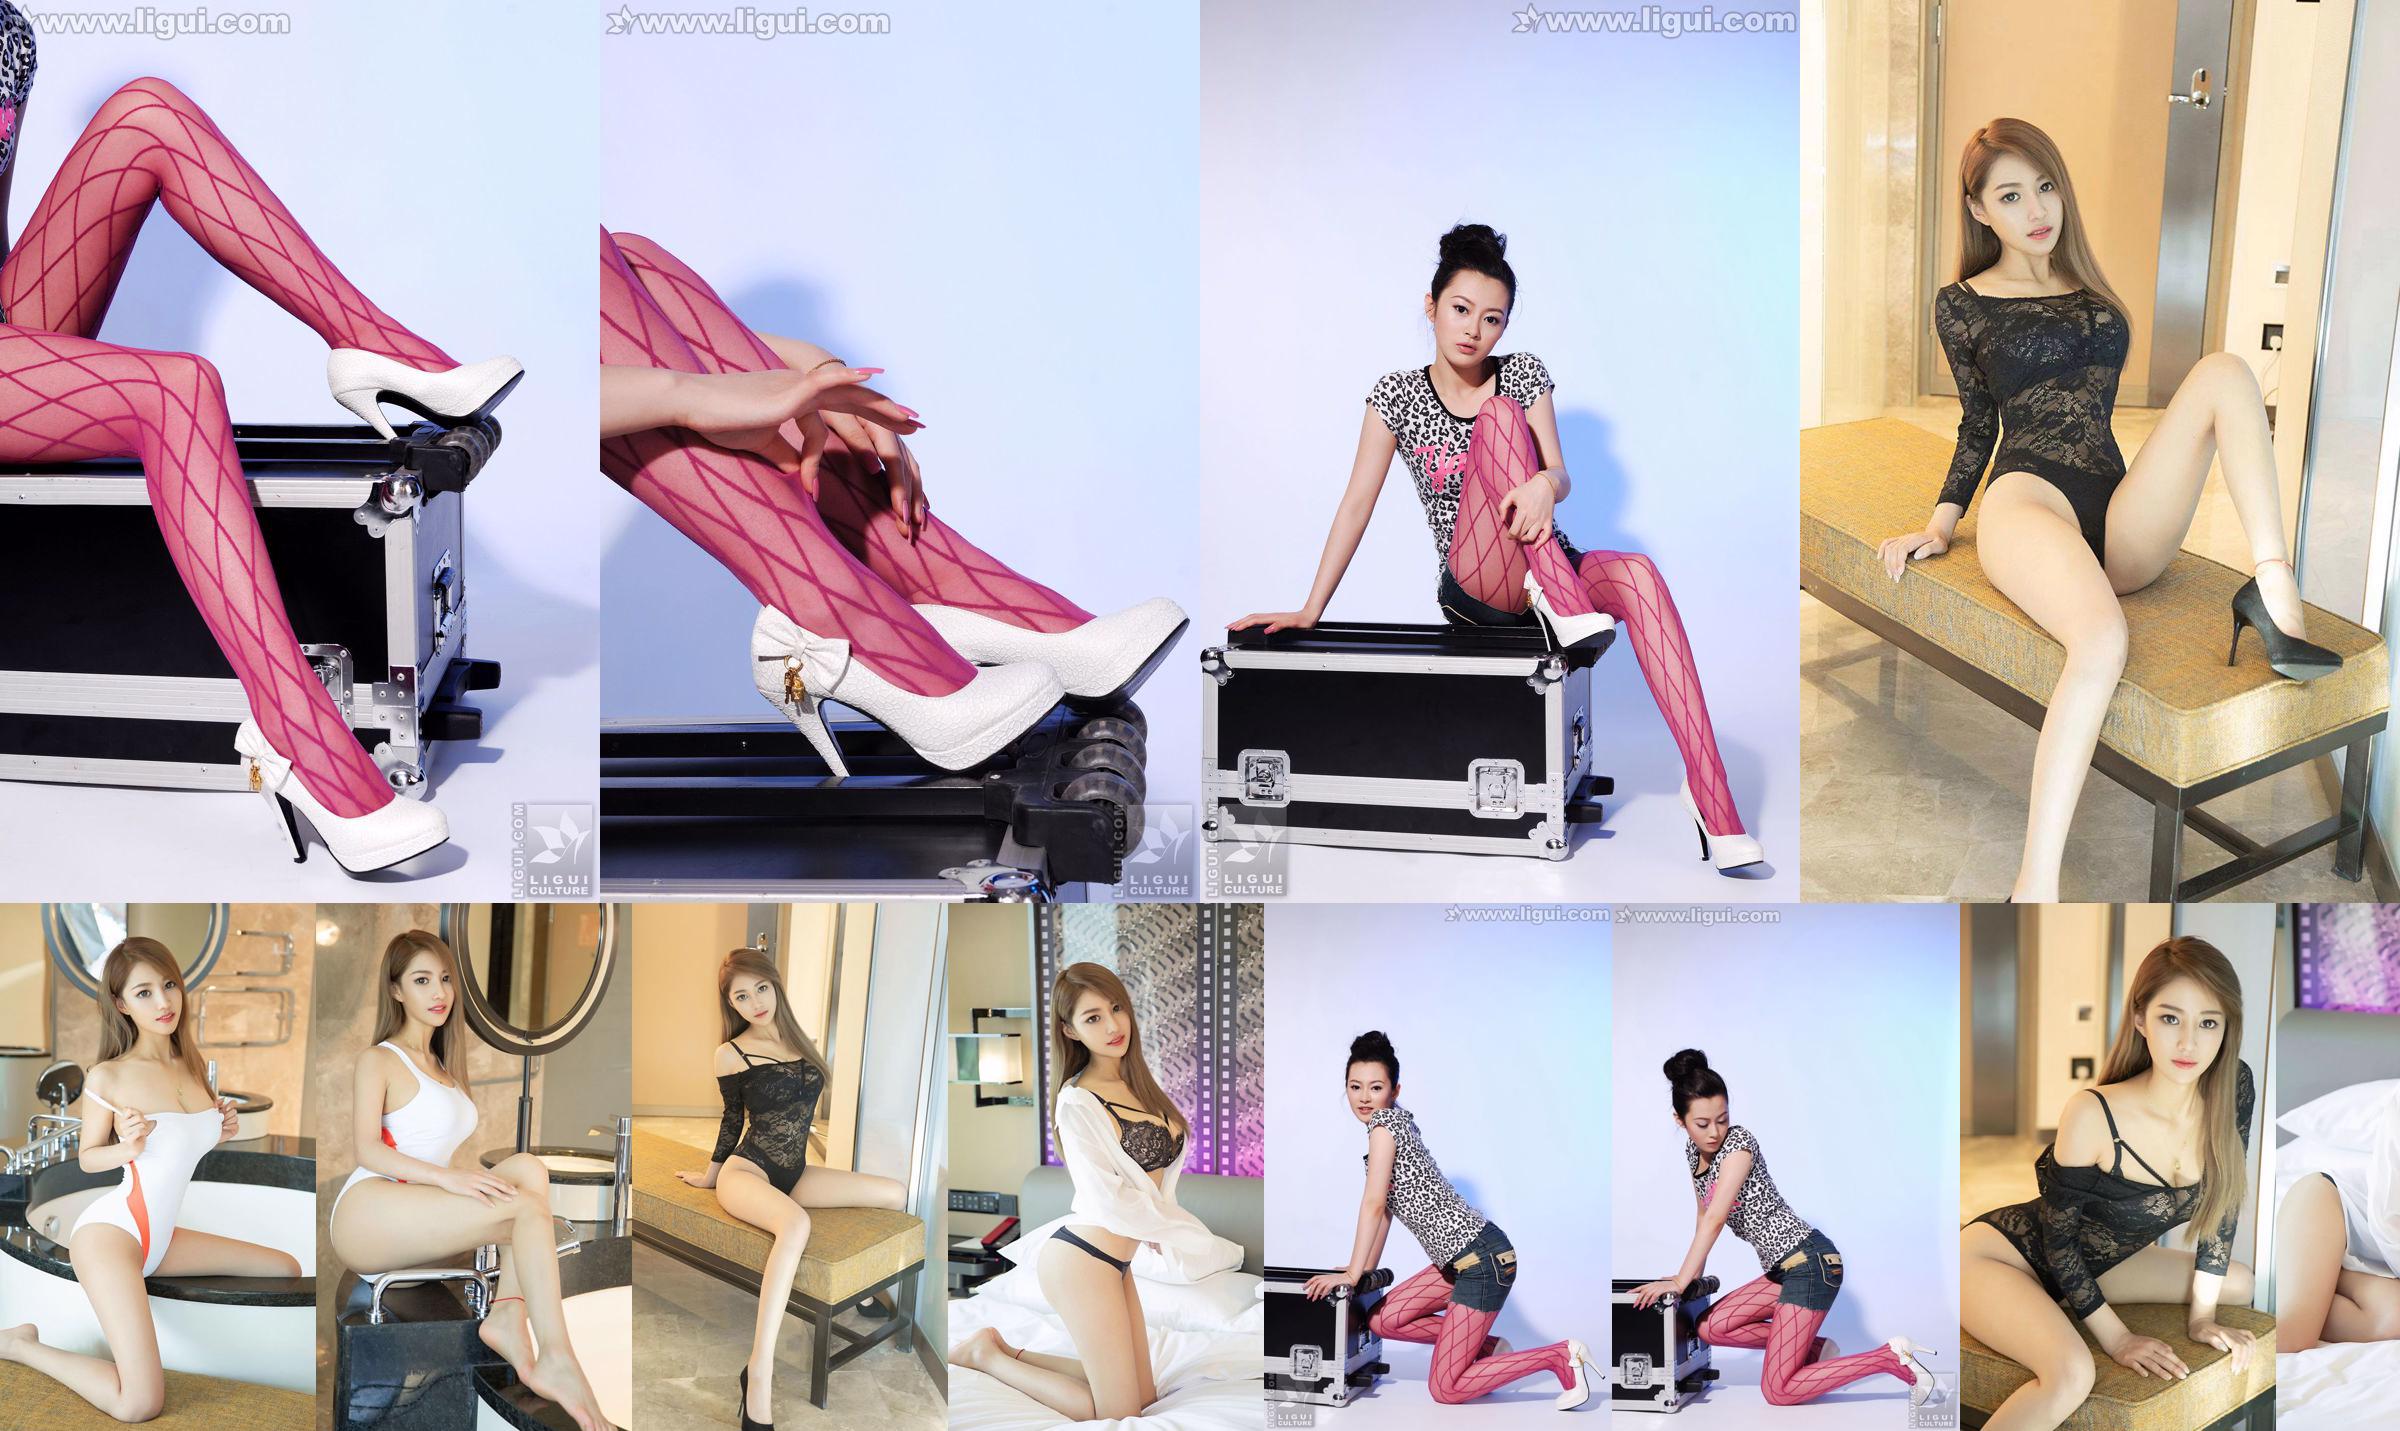 Modelo Chen Jiajia "Meias de seda coloridas e interpretação de salto alto" [丽 柜 LiGui] Foto de pé de seda No.5fcbe4 Página 1